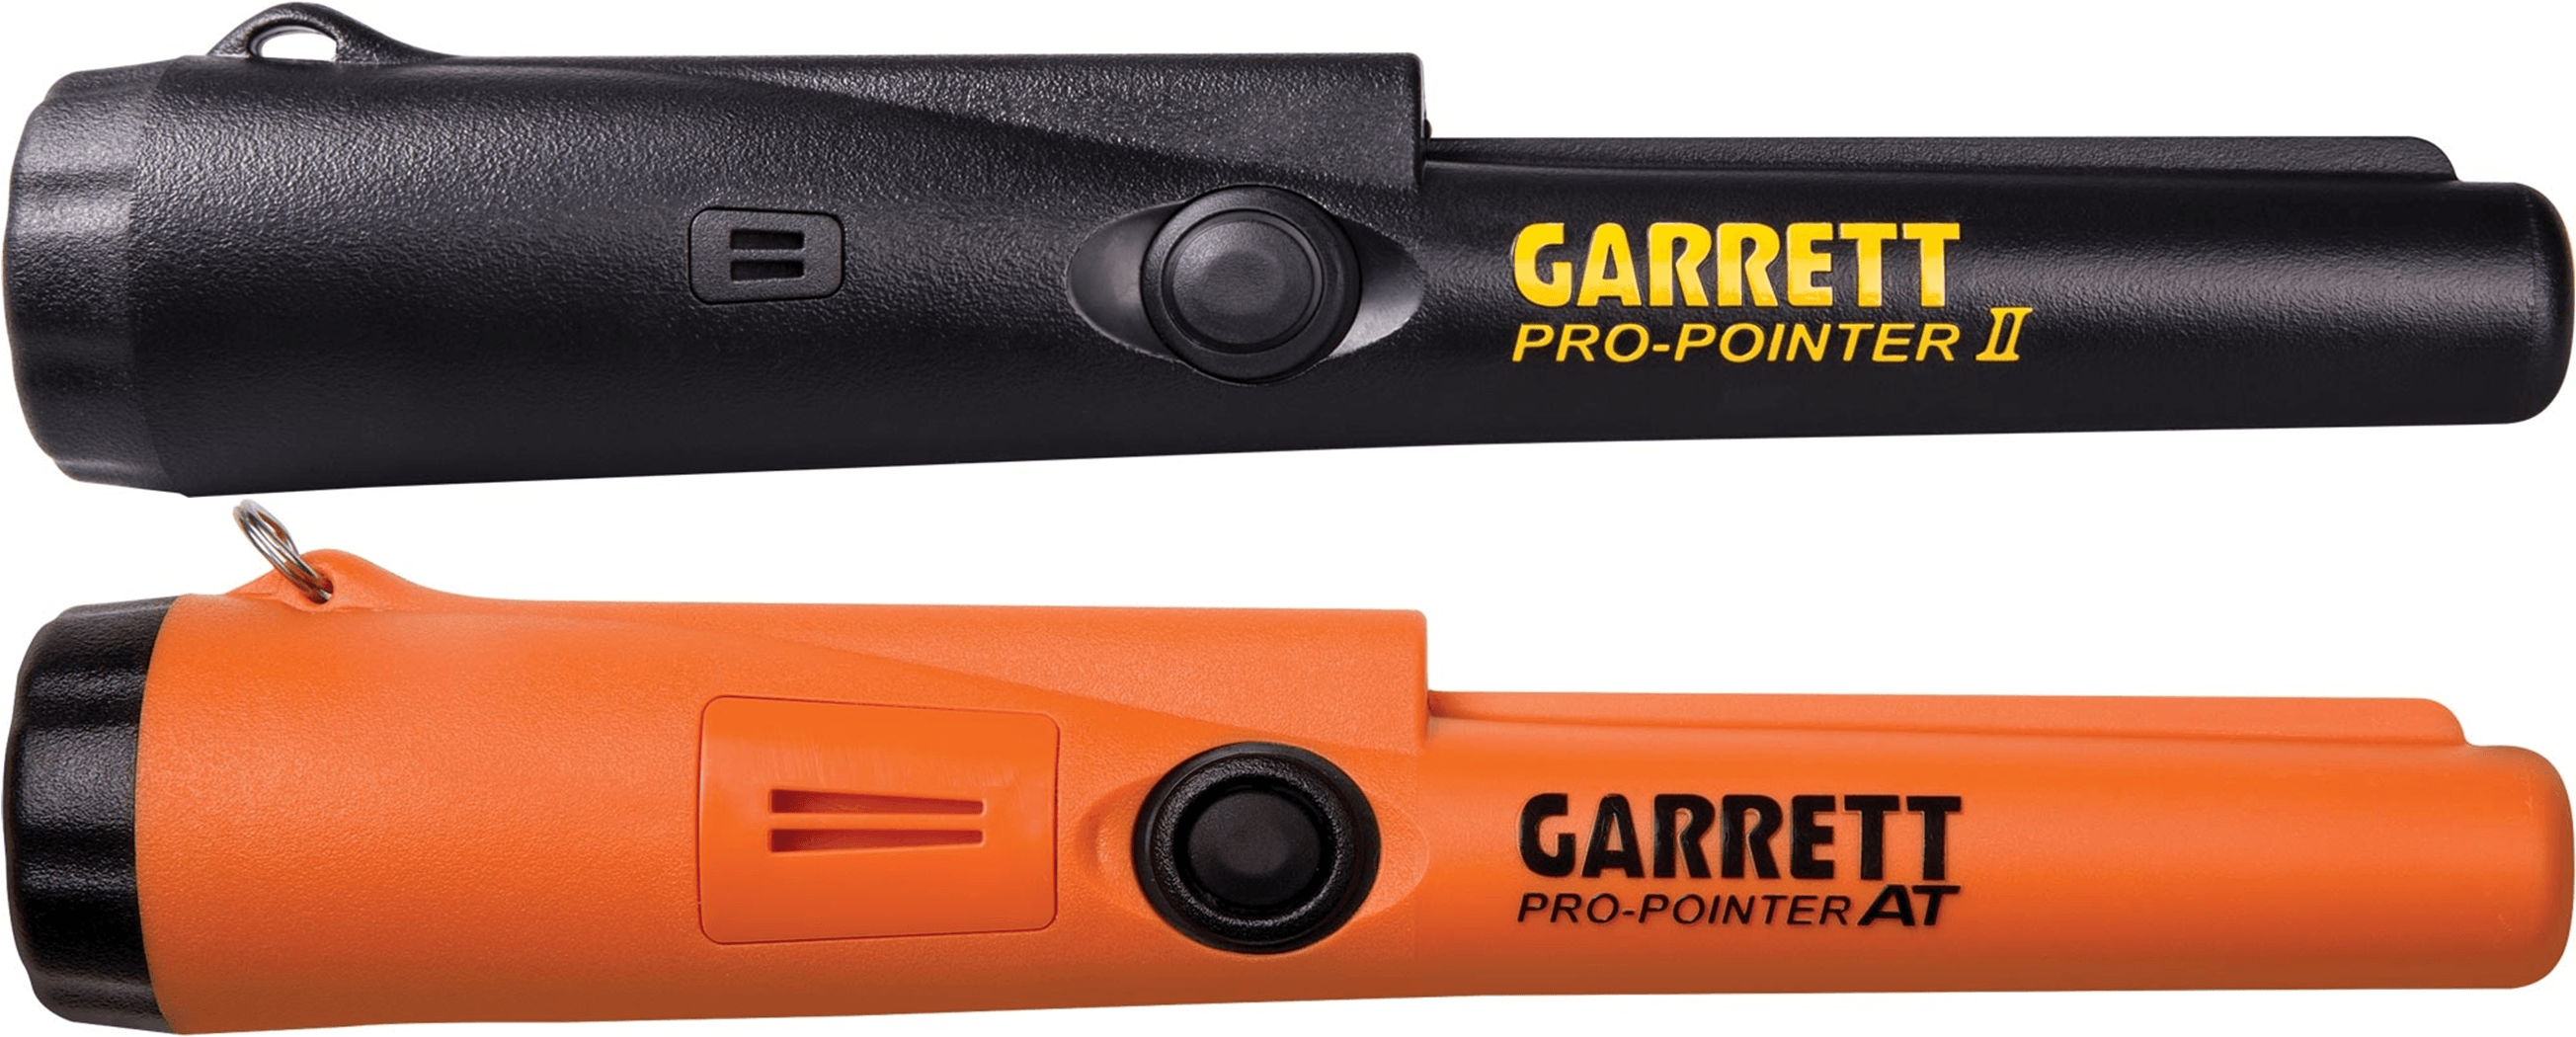 Garrett Pro Pointer II vs Pro Pointer II - Review and Comparison